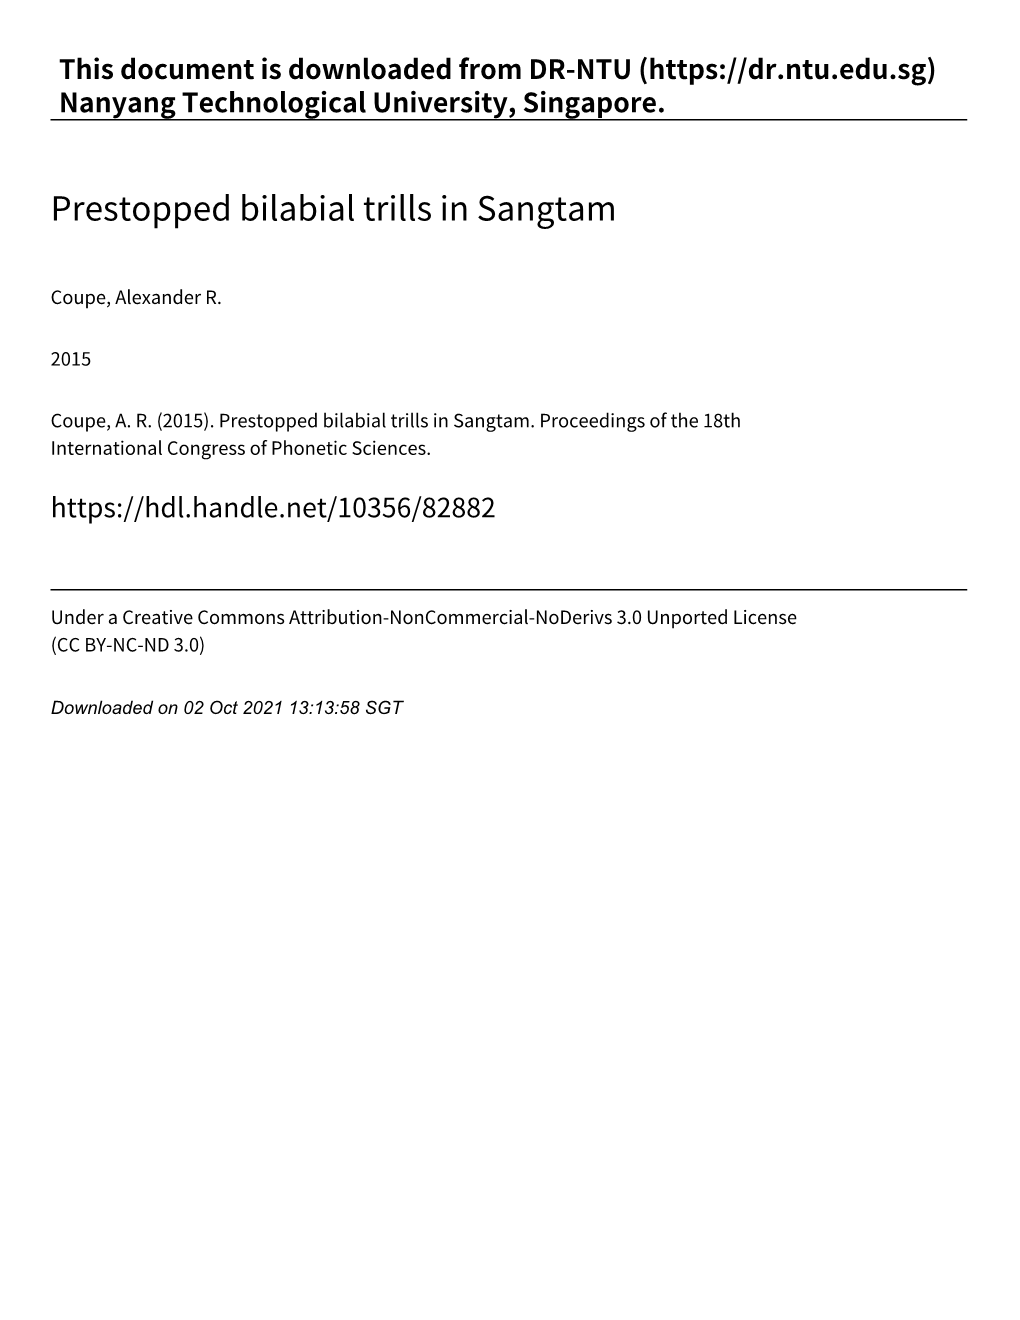 Prestopped Bilabial Trills in Sangtam